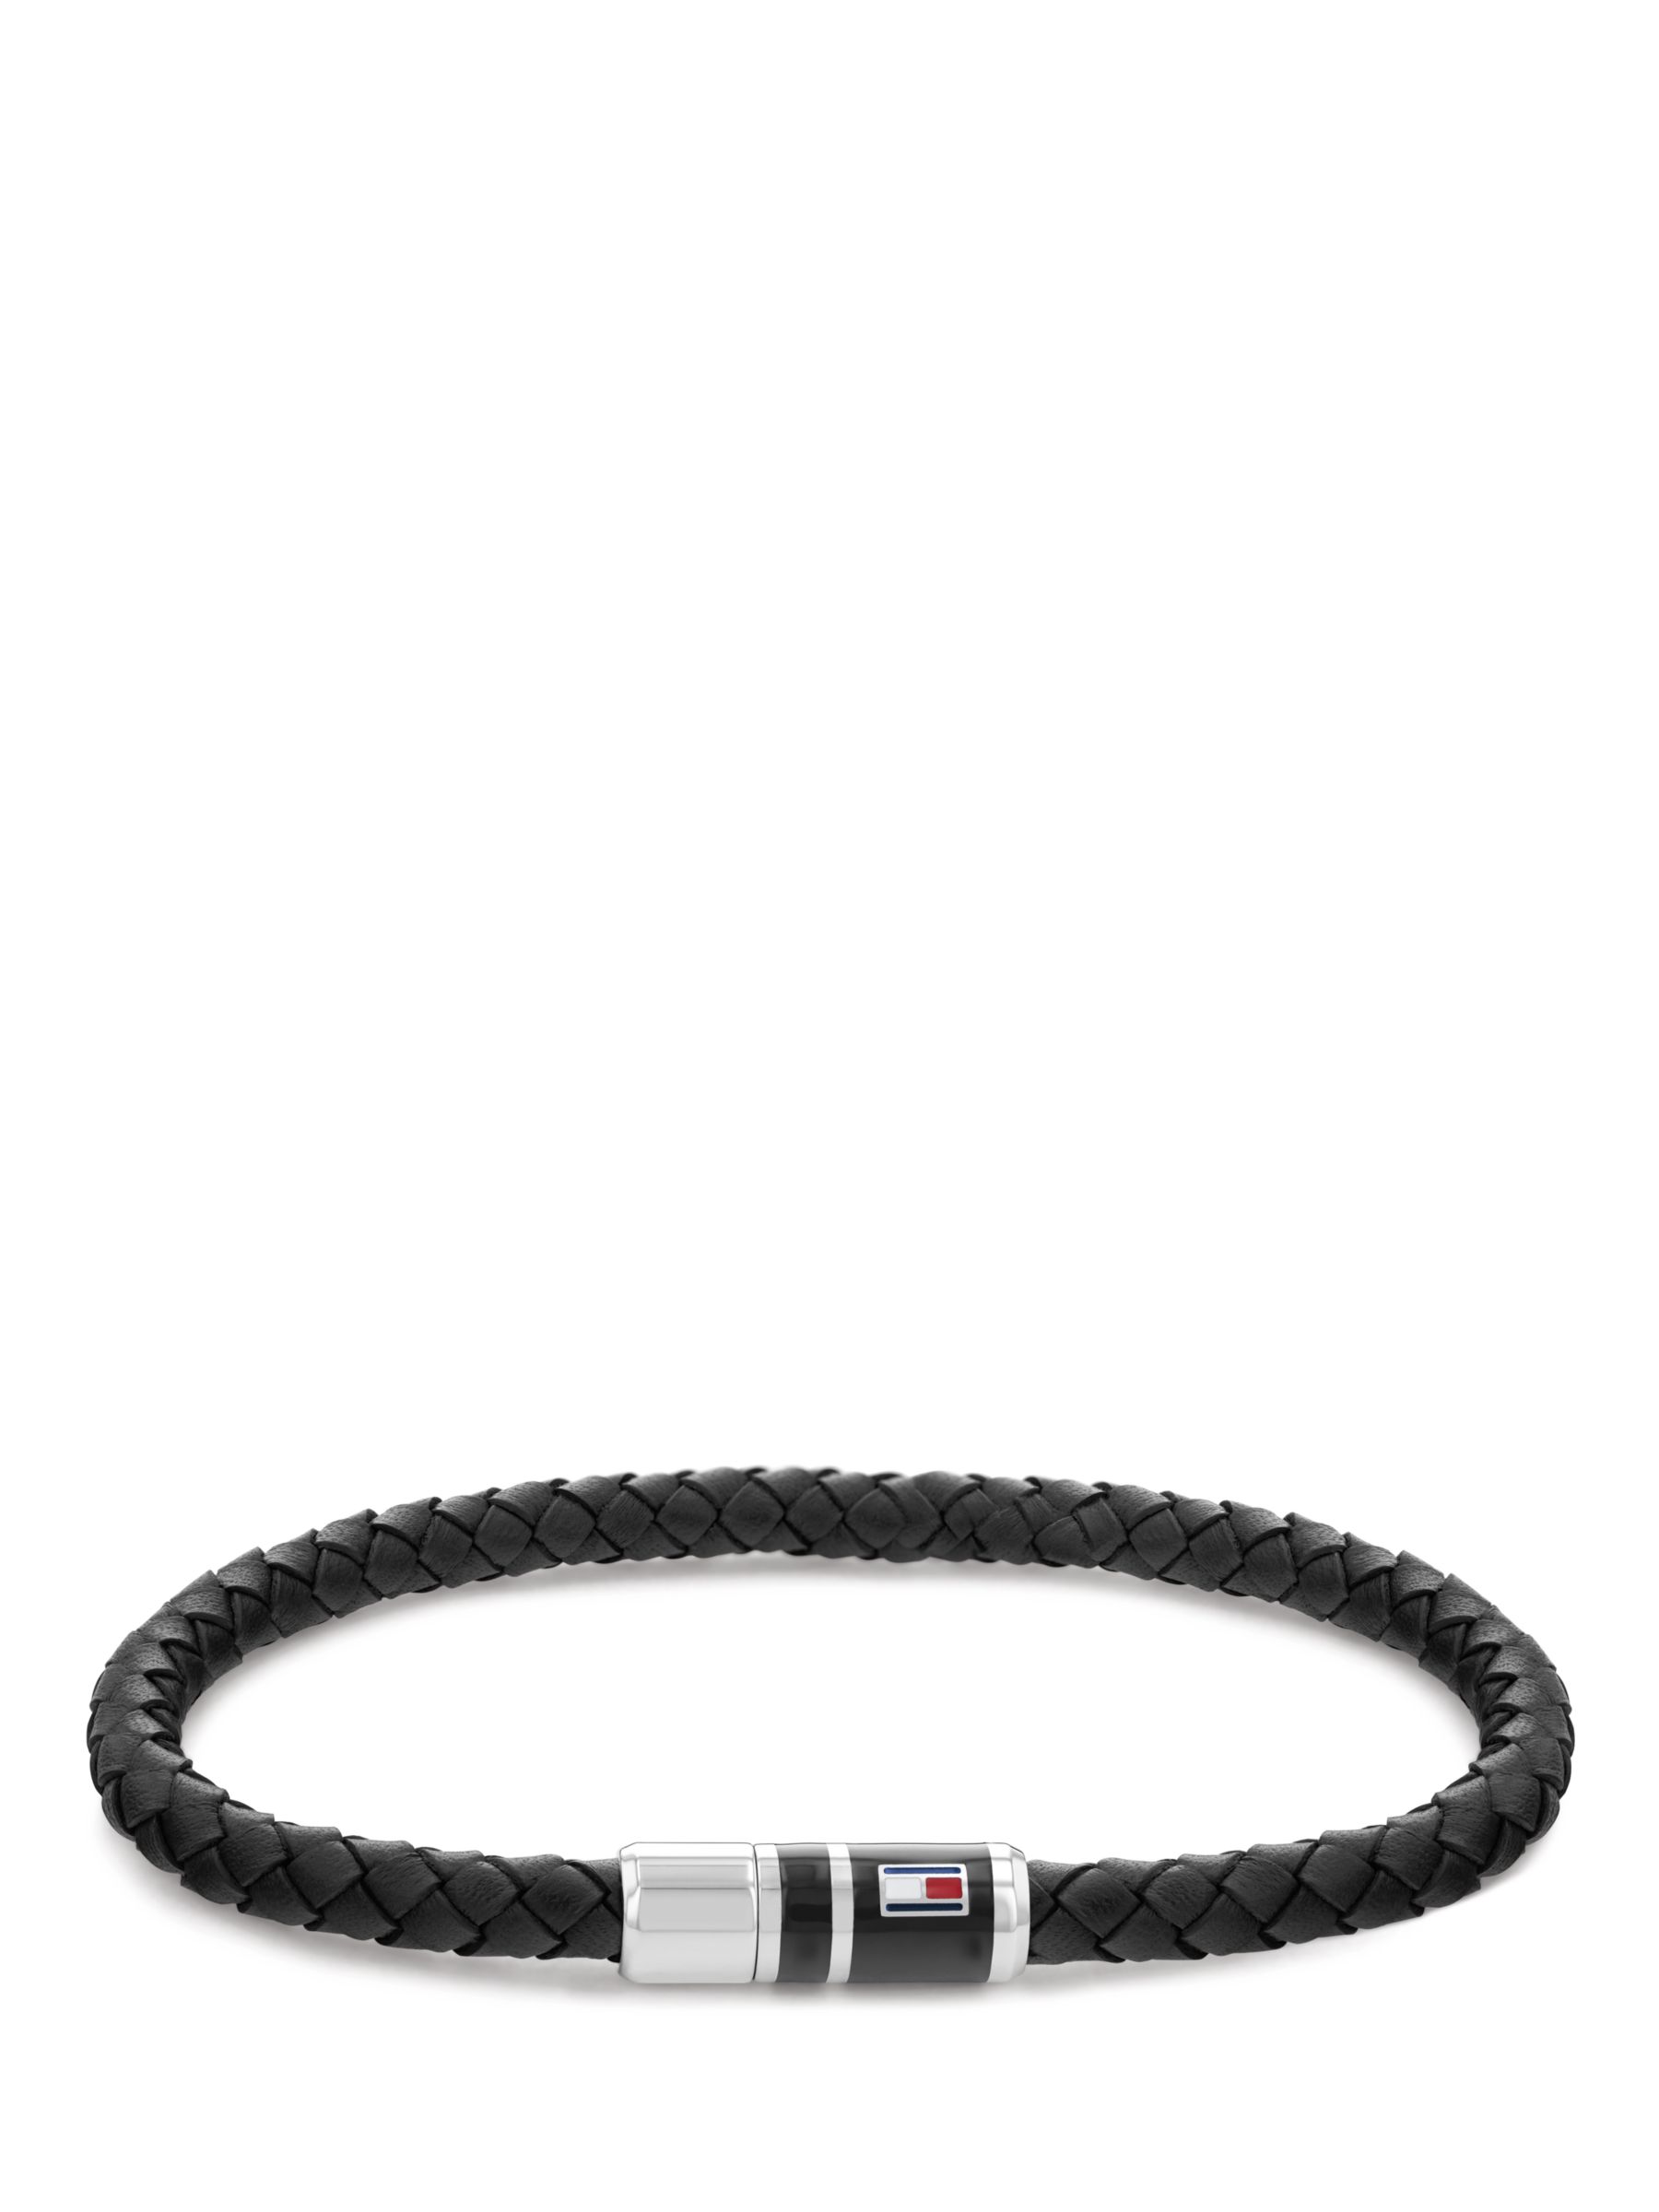 Tommy Hilfiger Men's Braided Leather Bracelet, Black